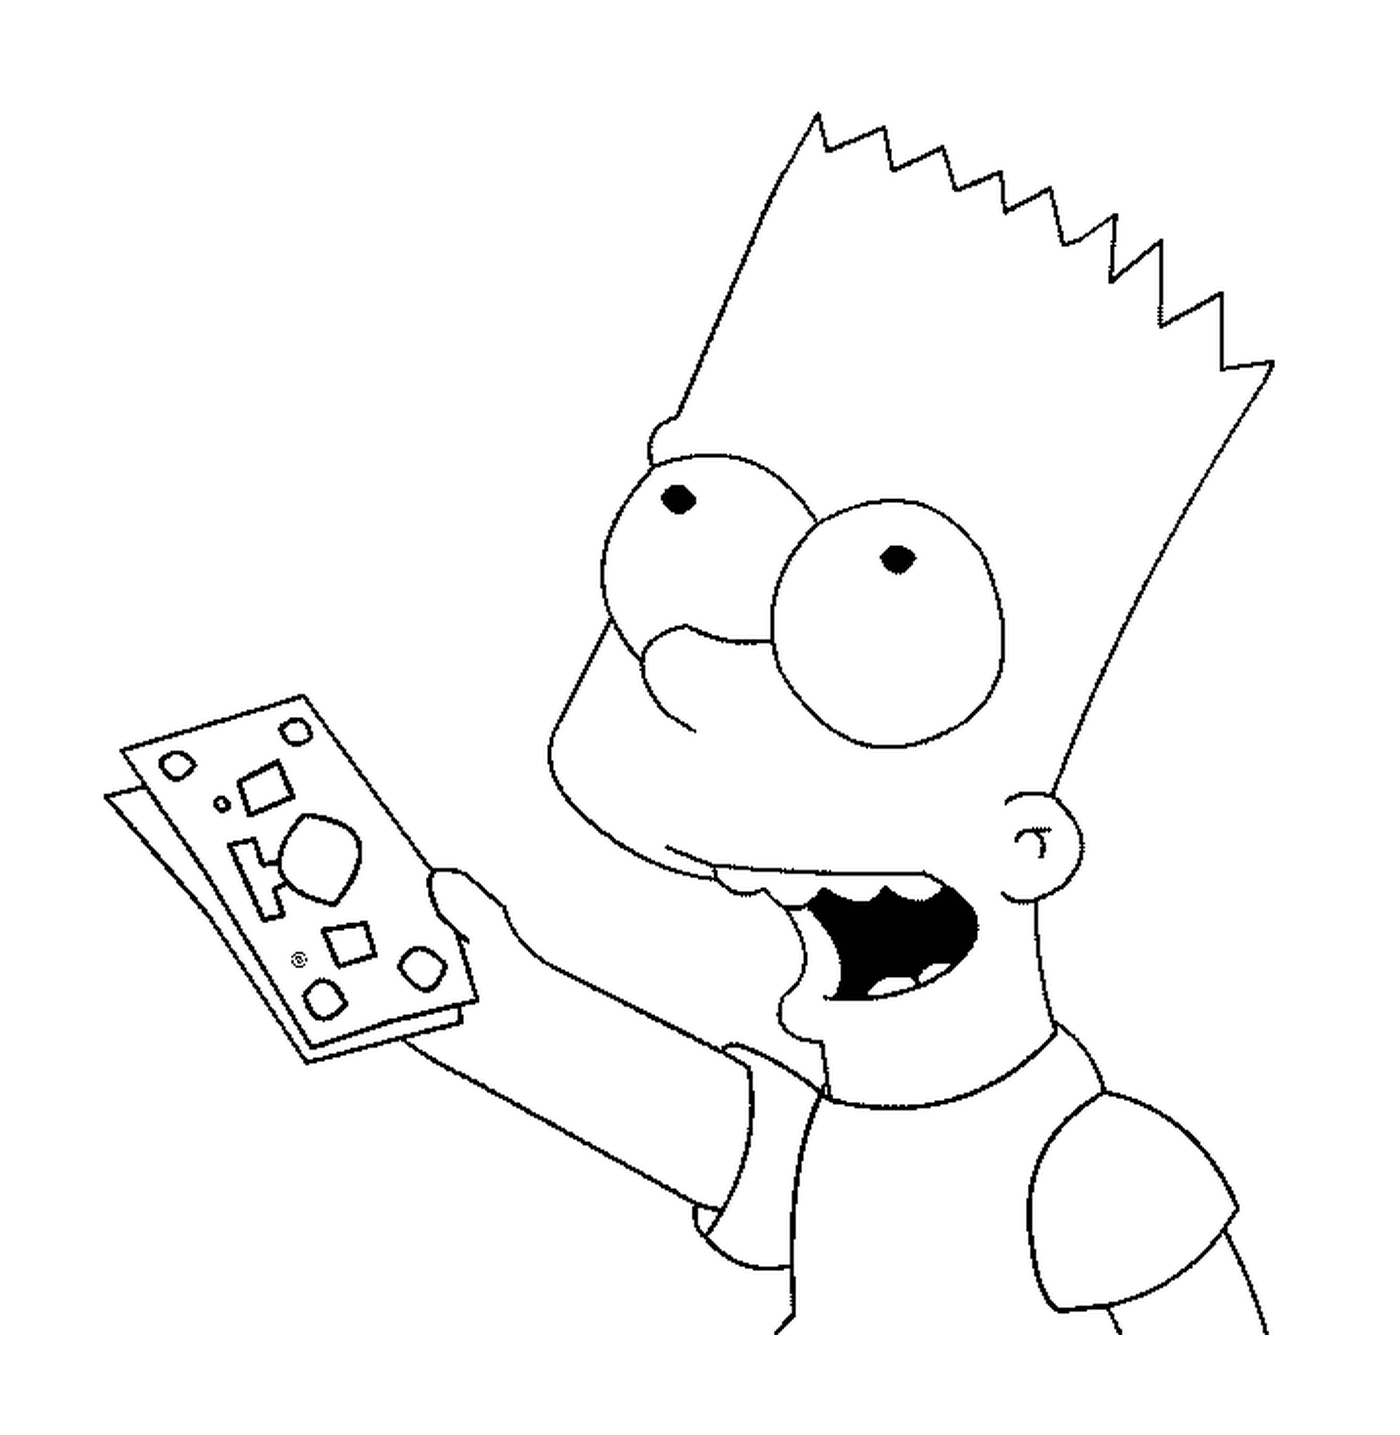  Bart ha le banconote 